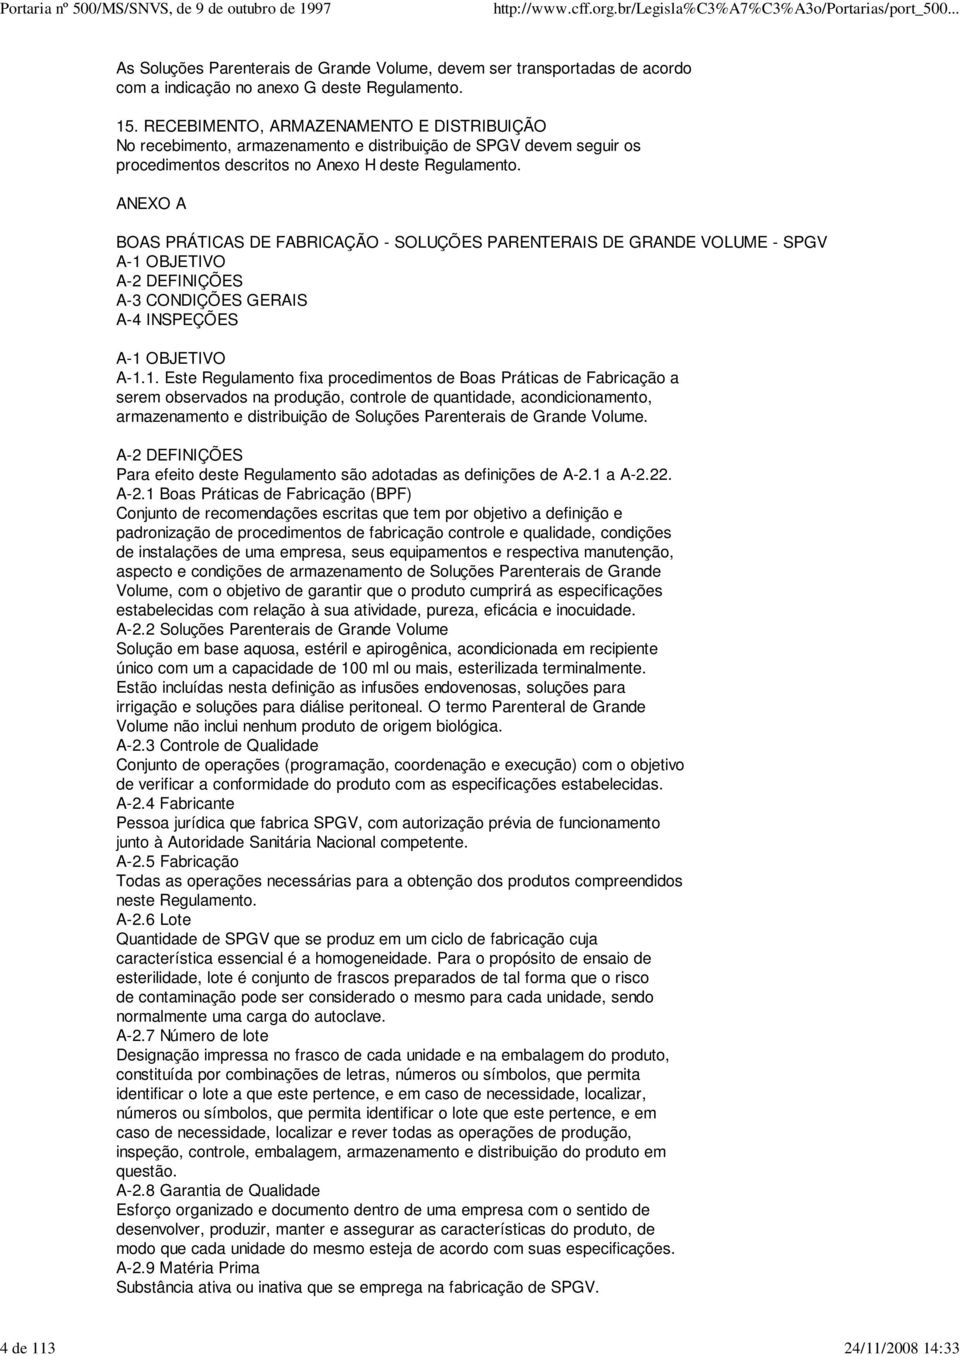 ANEXO A BOAS PRÁTICAS DE FABRICAÇÃO - SOLUÇÕES PARENTERAIS DE GRANDE VOLUME - SPGV A-1 